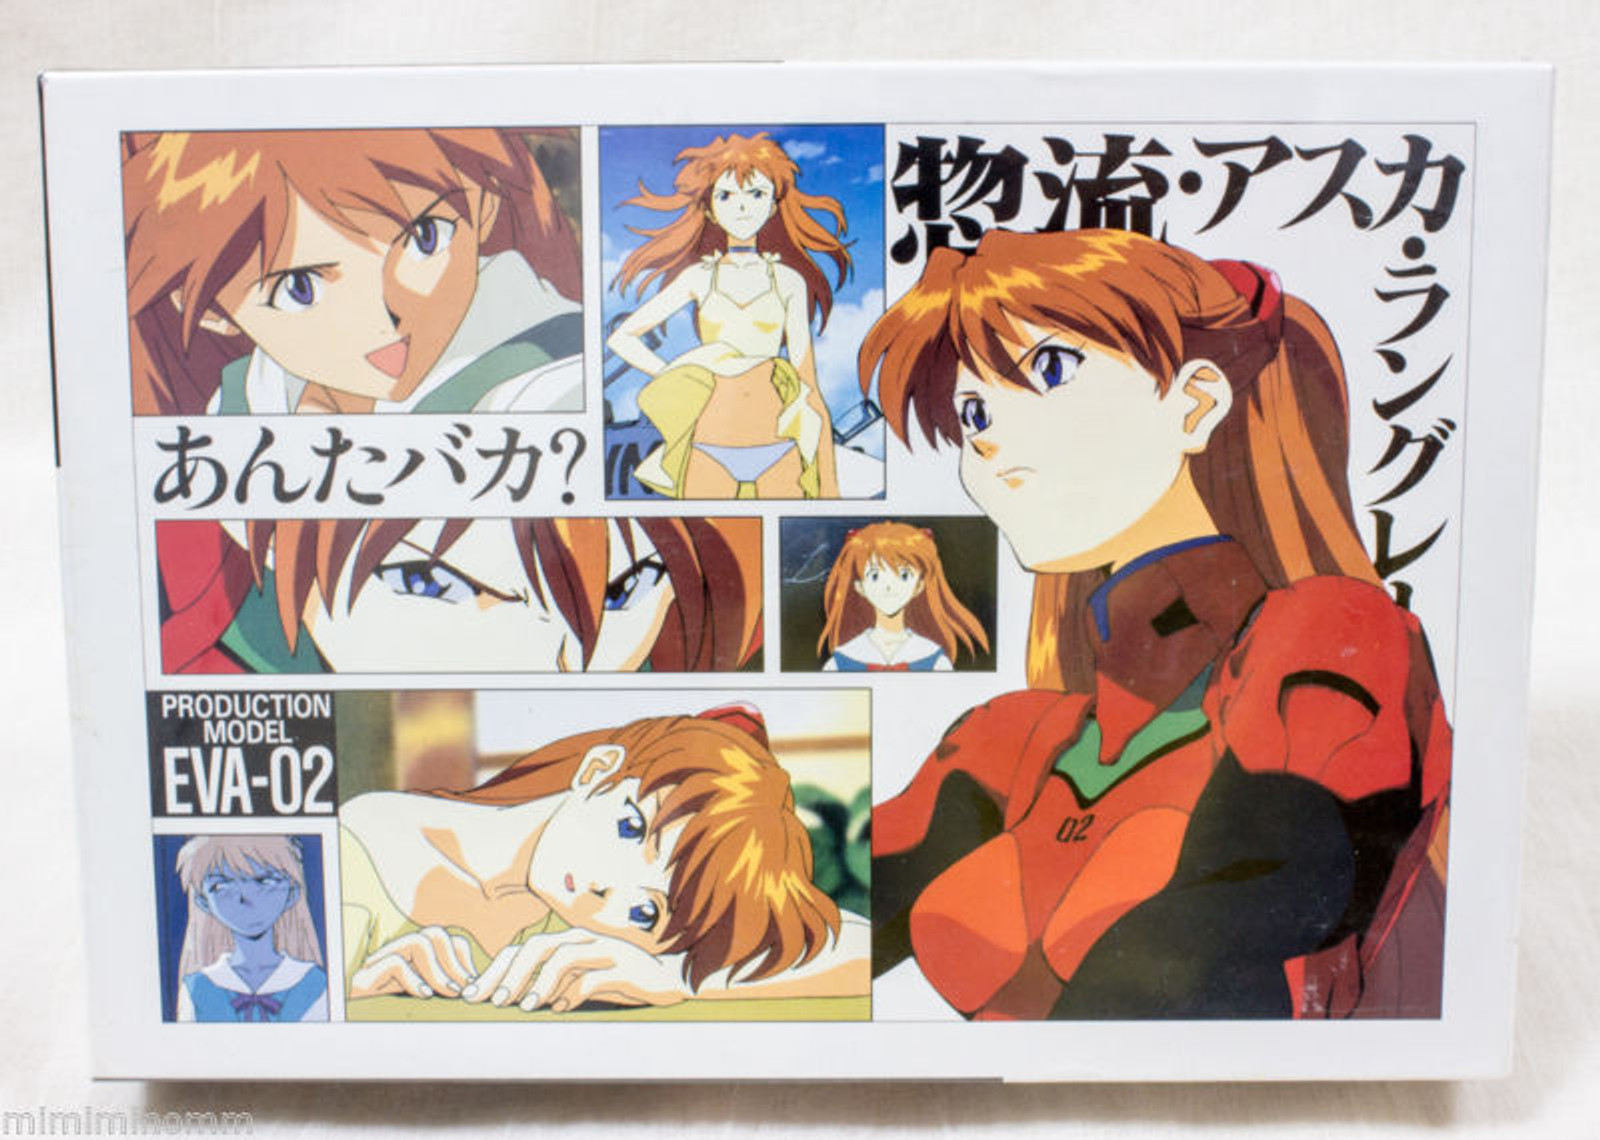 Evangelion Sohryu Asuka Langley Picture Puzzle 300 pcs 38x26cm JAPAN ANIME MANGA